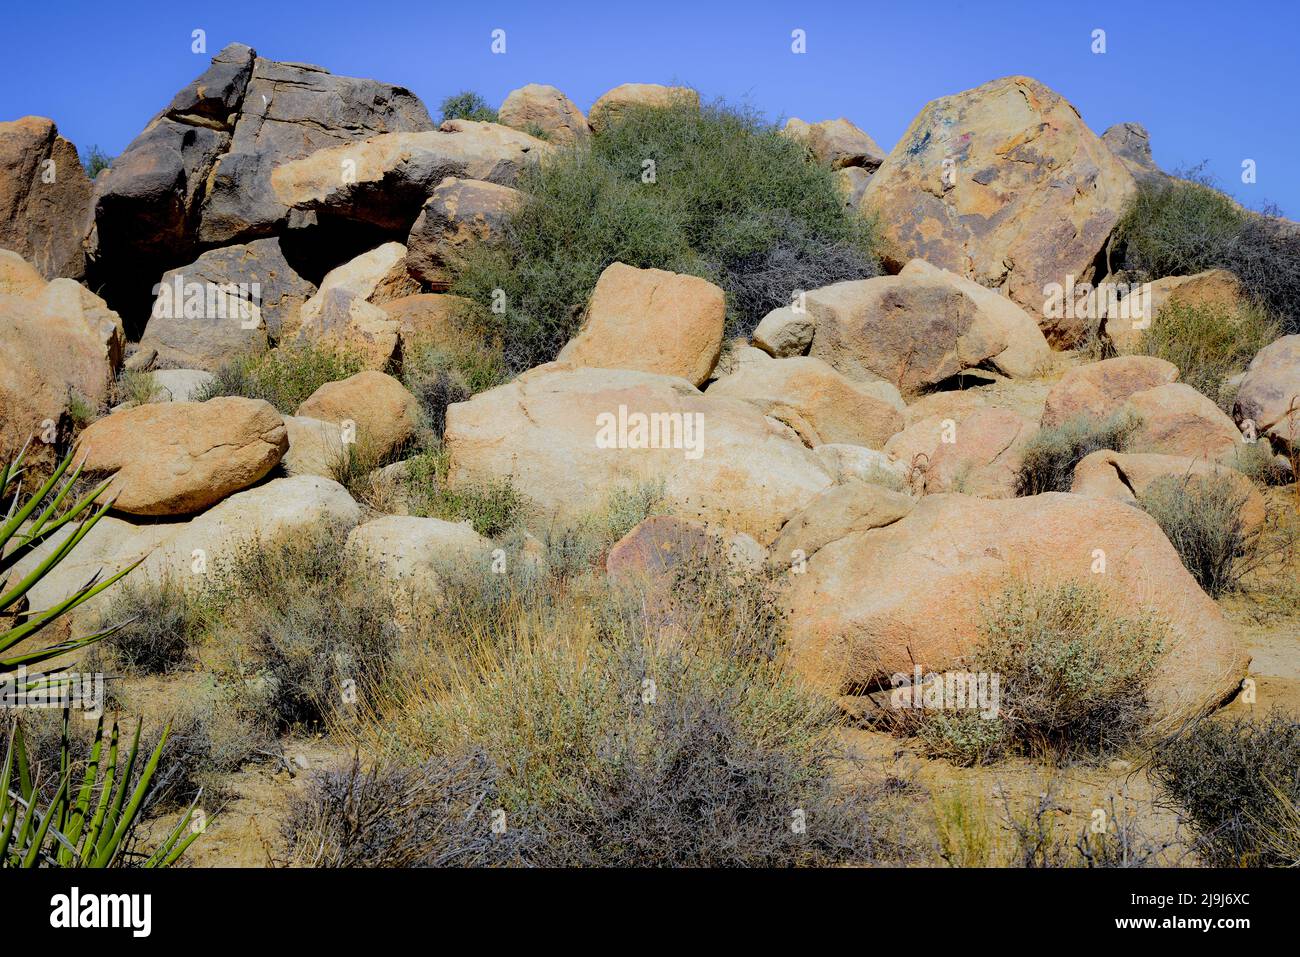 El único Parque Nacional Joshua Tree, salpicado de cactus y árboles de Josué, entre formaciones rocosas de erupciones y erosión, en el desierto de Mojave, CA Foto de stock